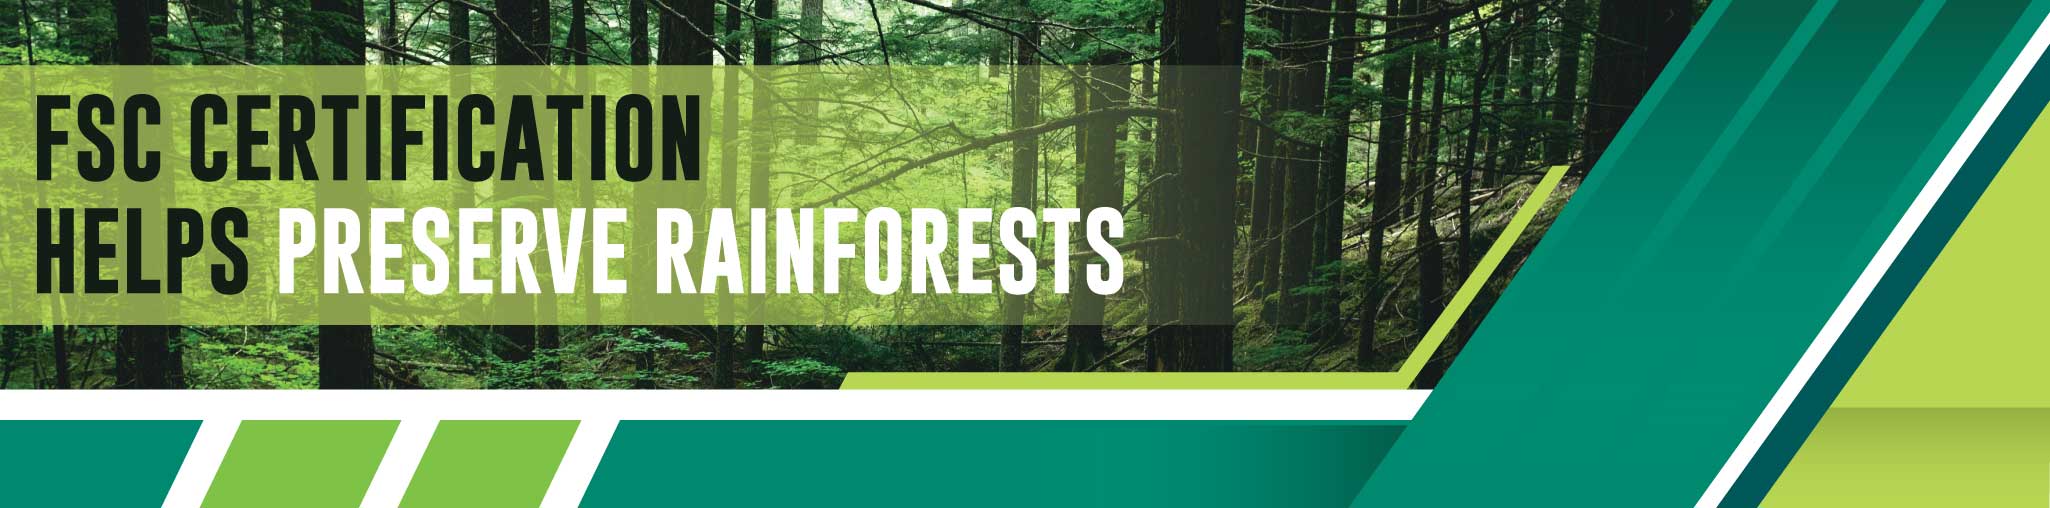 FSC Certification for Preserve Rainforests